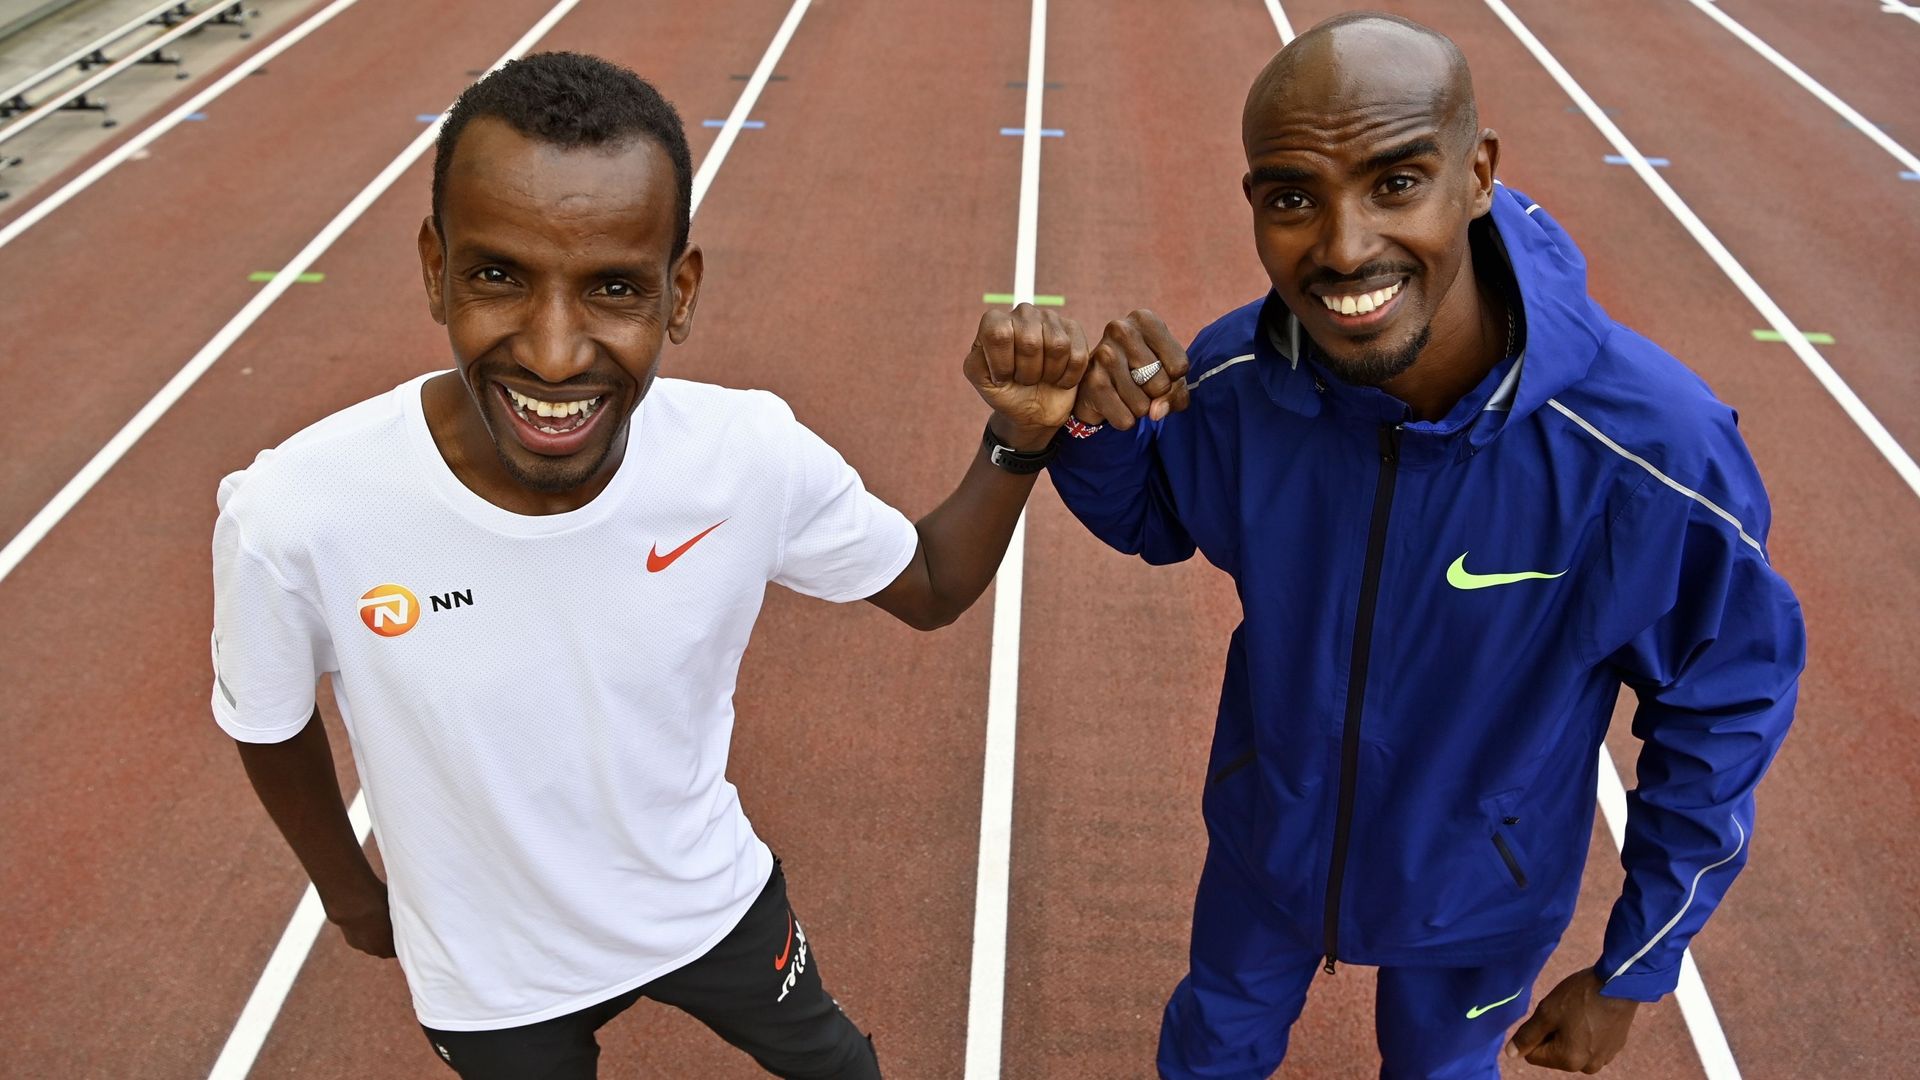 Les deux amis Bashir Abdi et Mo Farah vont lutter pour battre le record de l'heure vendredi au Mémorial Van Damme dans un stade Roi Baudouin vide.